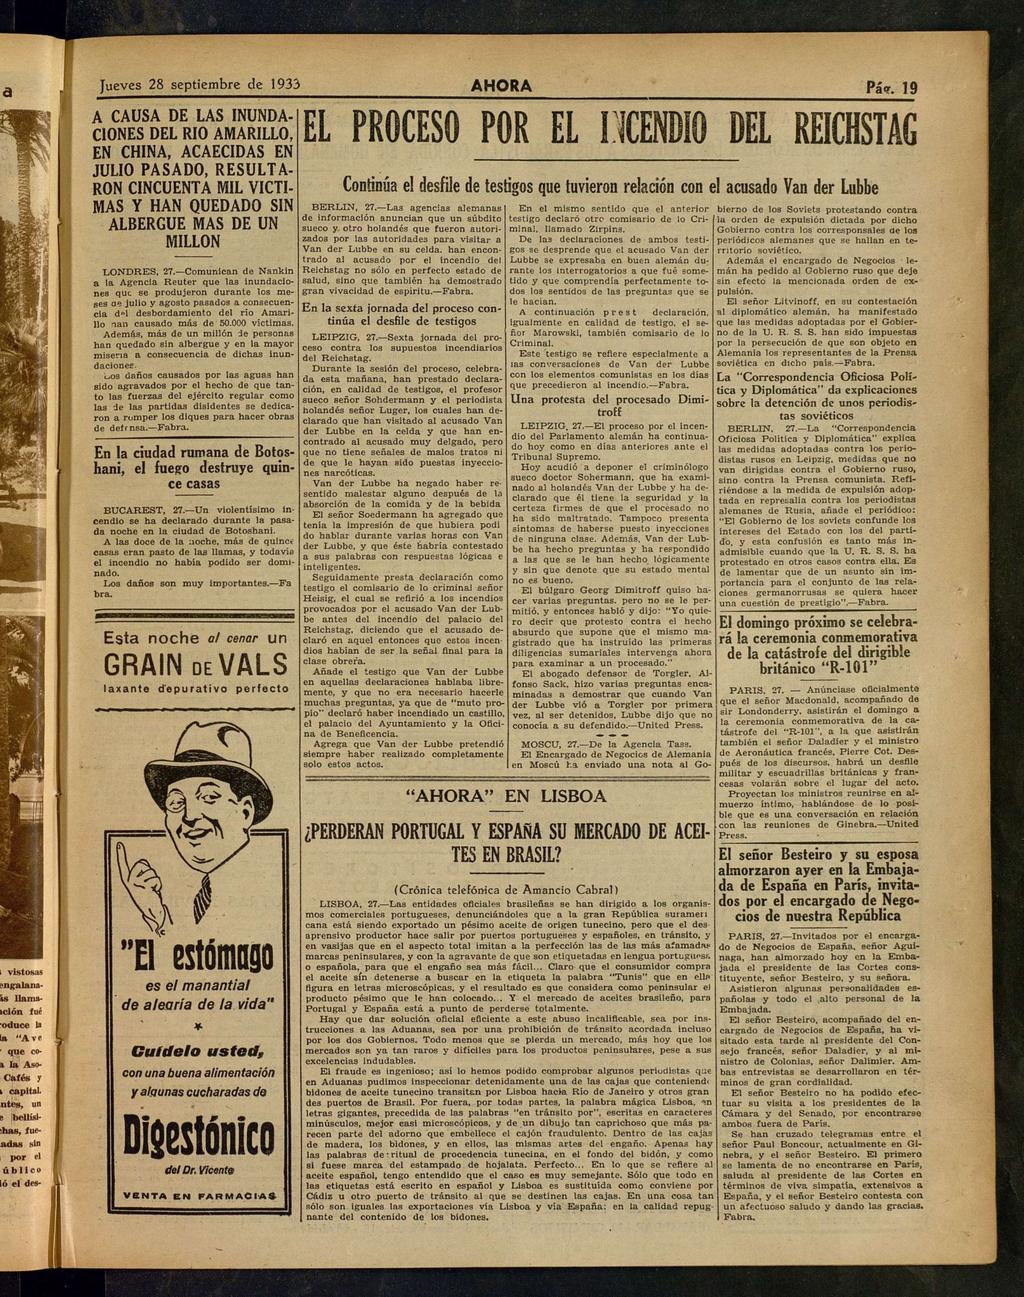 1933 Juv 28 pmb 1933 A CAUSA DE LAS INUNDACIONES DEL RIO AMARILLO, EN CHINA, ACAECIDAS EN JULIO PASADO, RESULTARON CINCUENTA MIL VICTIMAS Y HAN QUEDADO SIN ALBERGUE MAS DE UN MILLON EL PROCESO POR EL